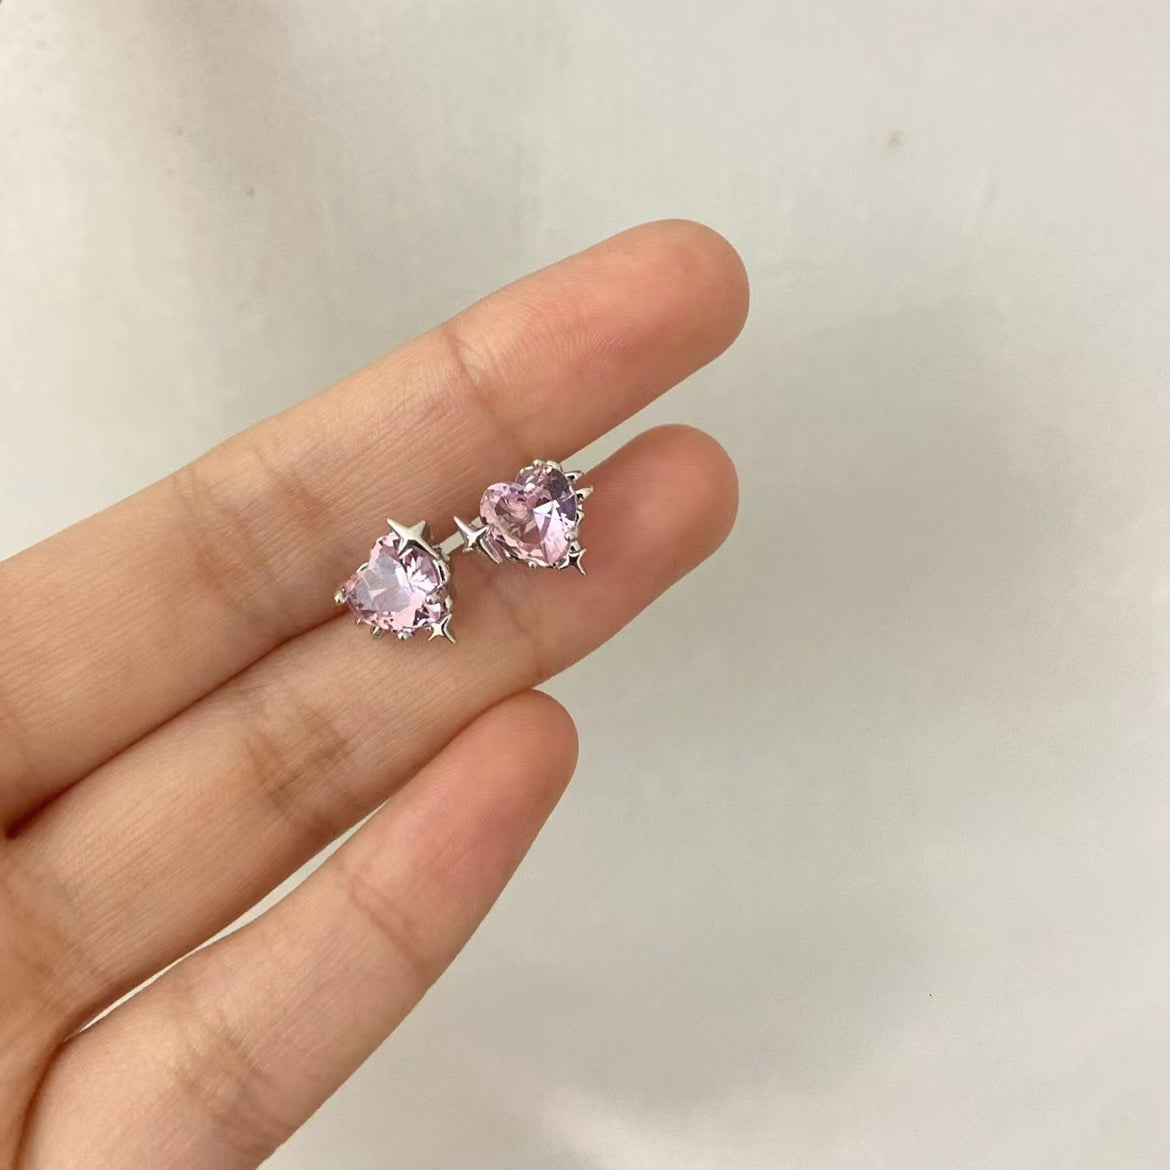 Four star zircon pink love chain Tassel Earrings